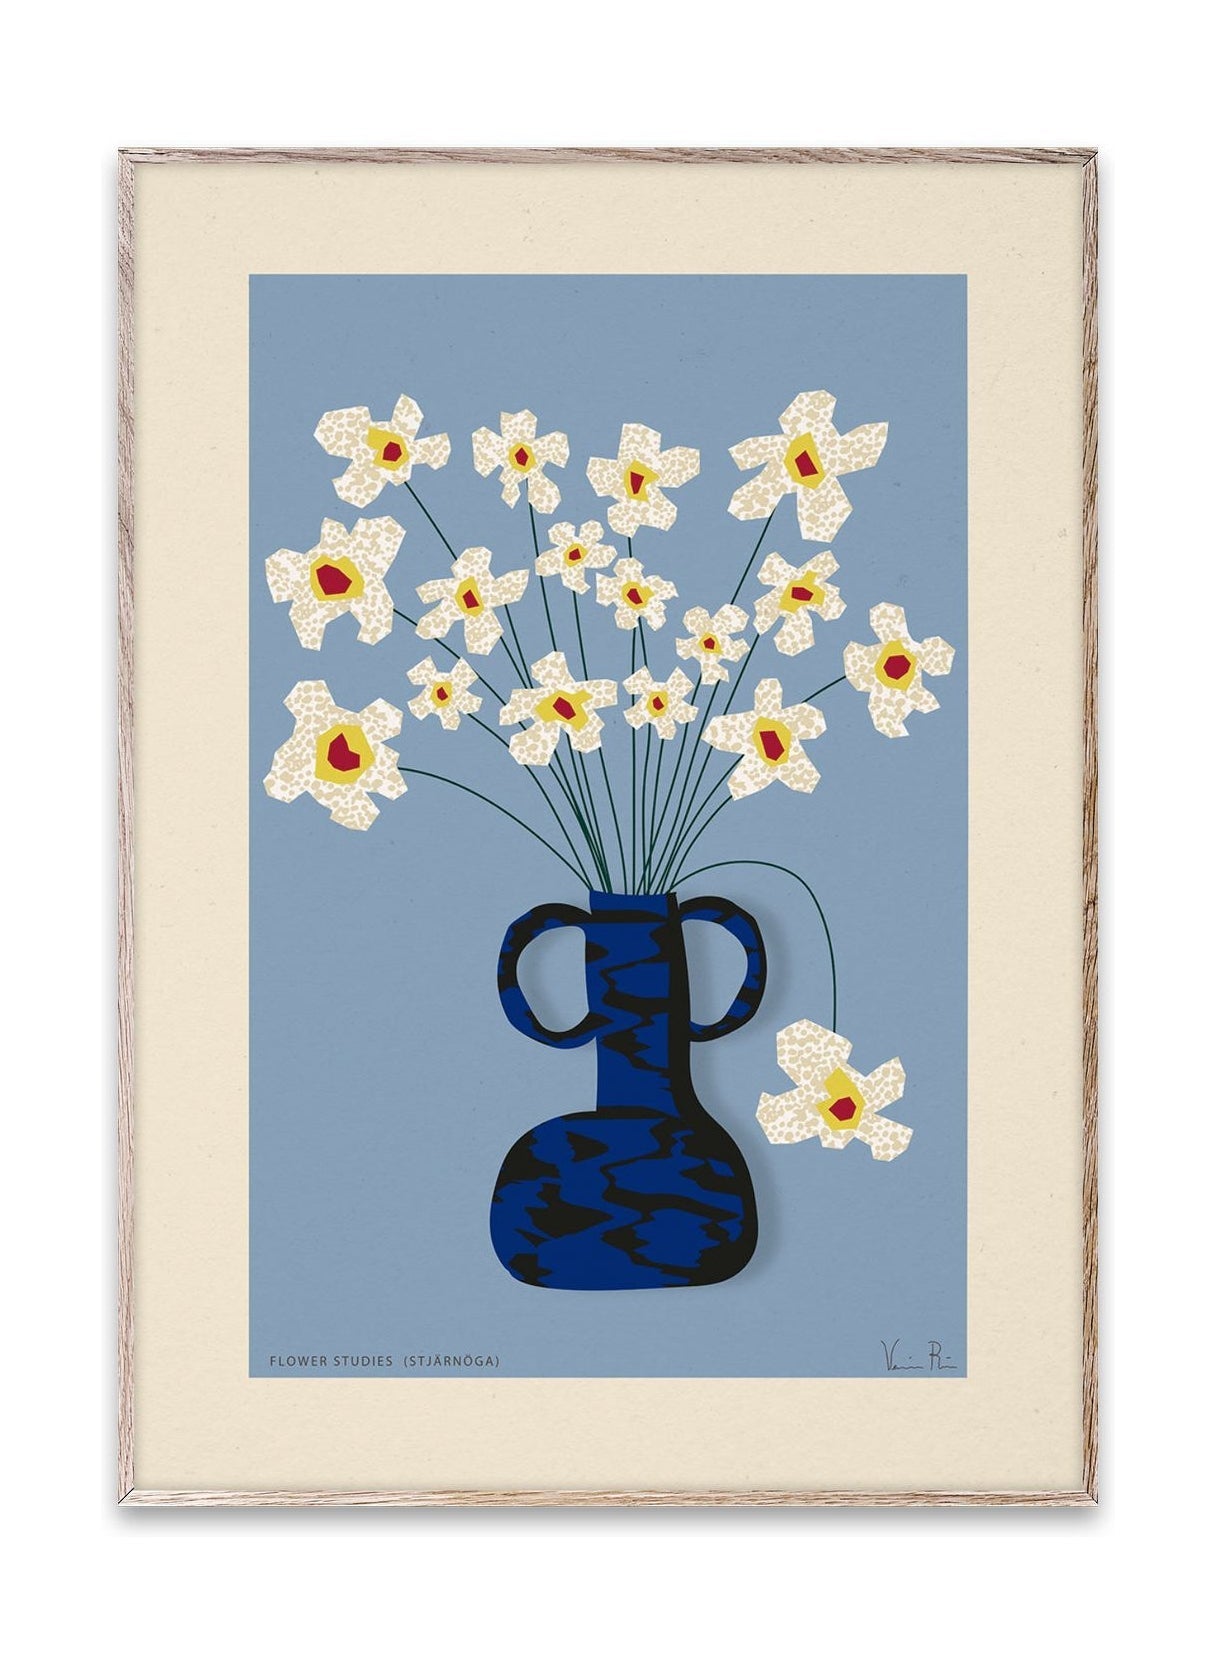 Paper Collective Flower Studies 04 (Stjärnöga) affisch, 50x70 cm